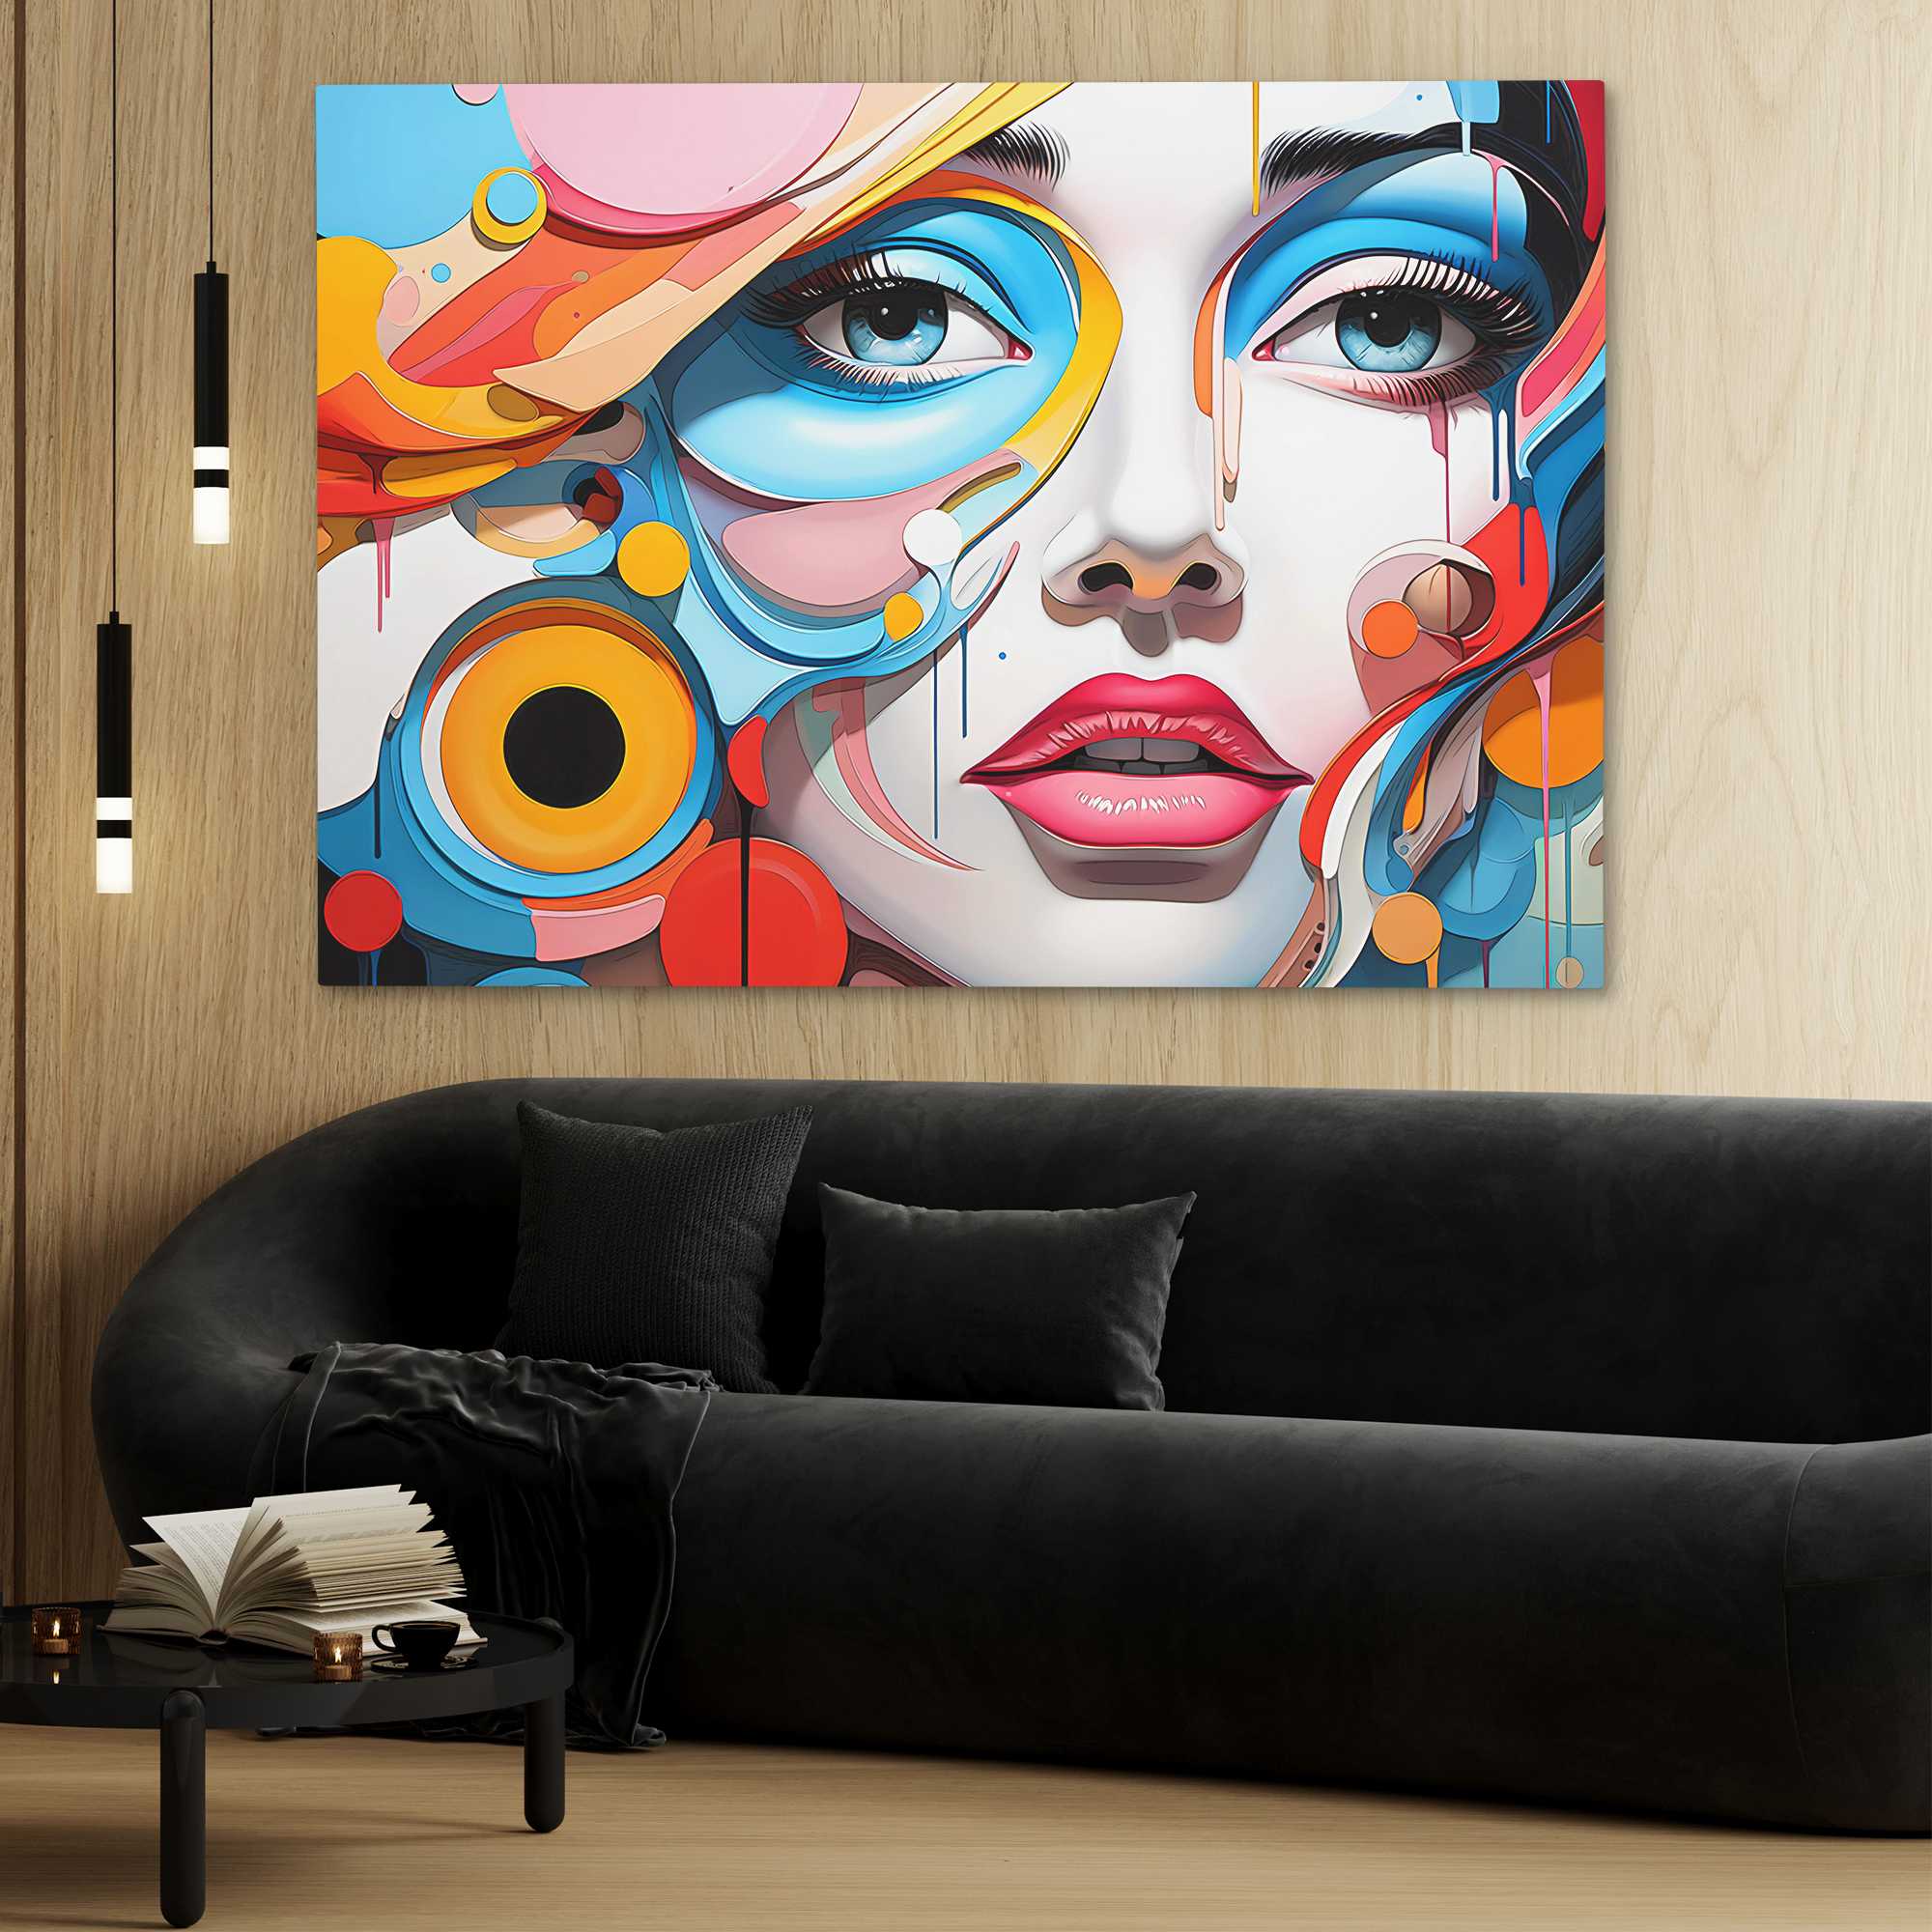 Eyes on You - Luxury Wall Art